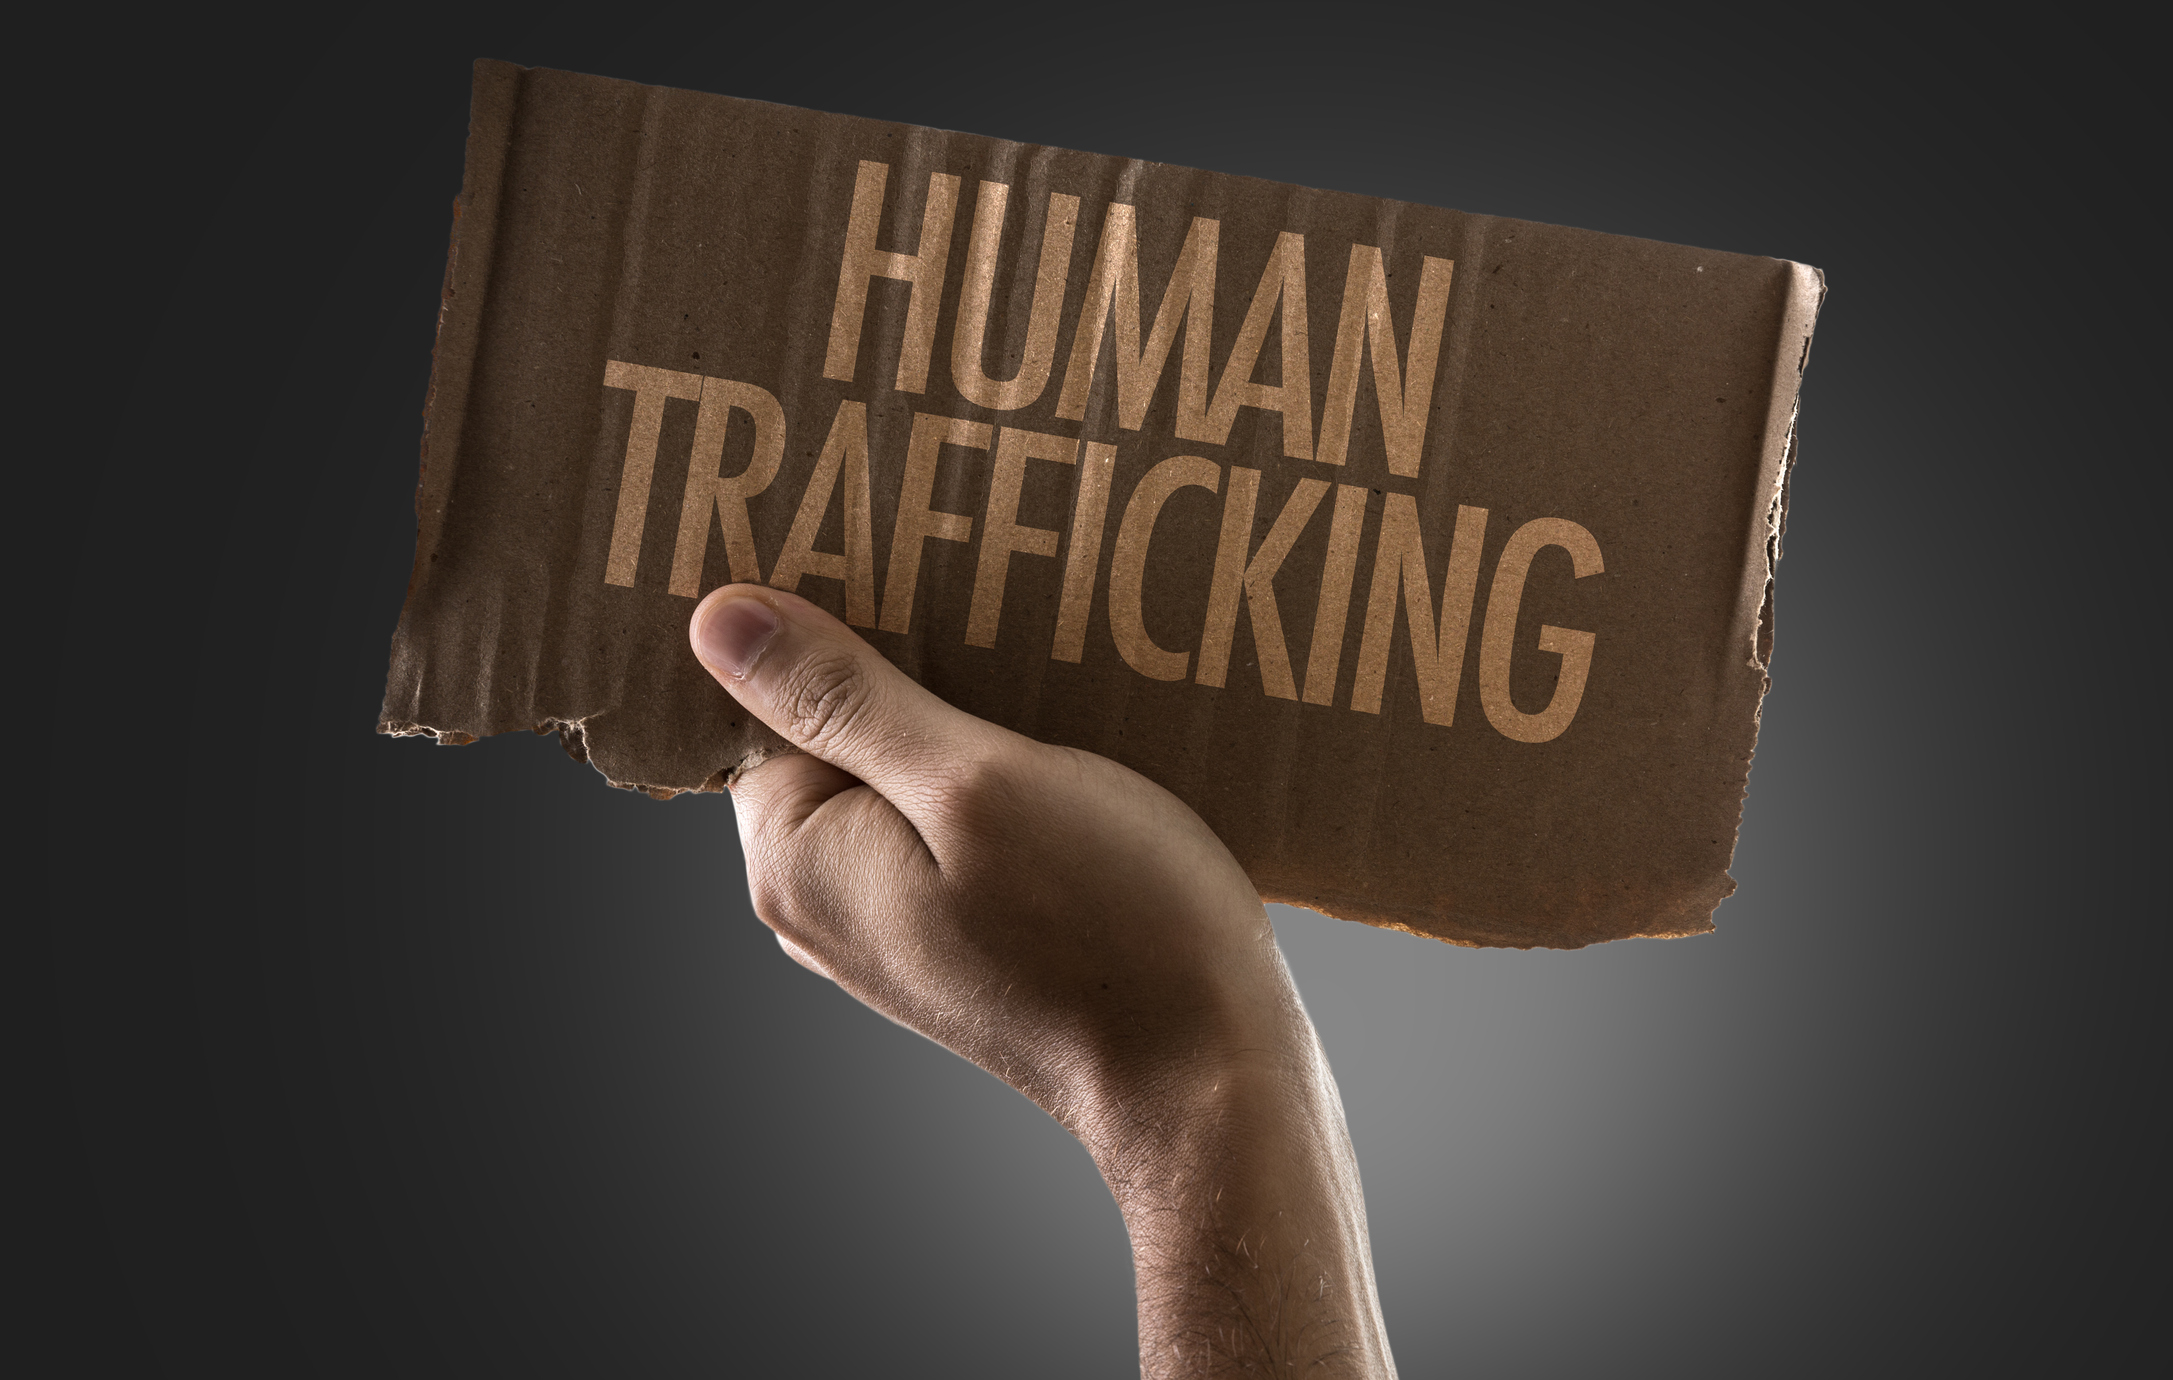 Types of Human trafficking